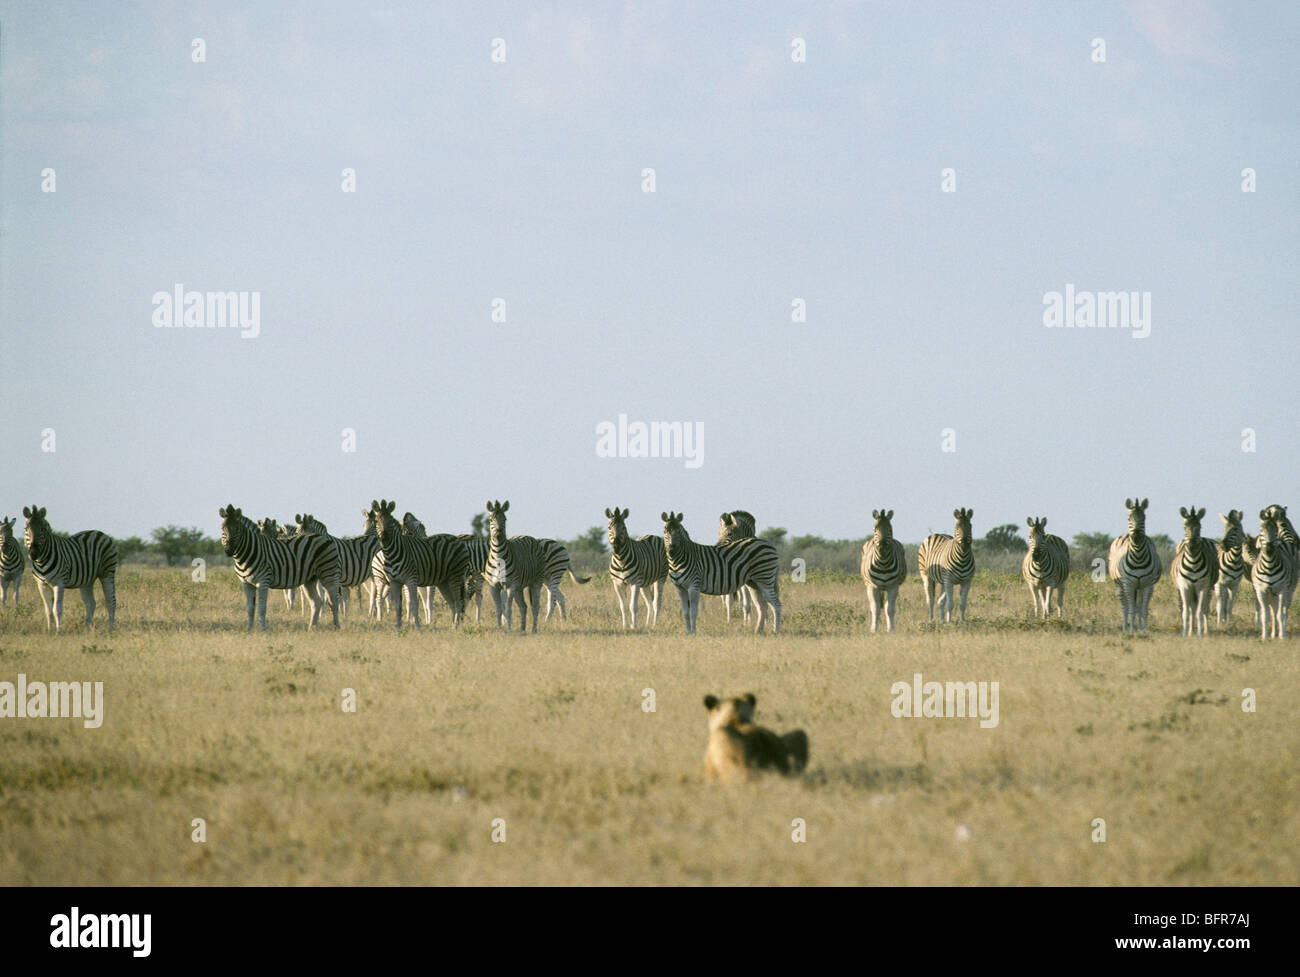 Le zèbre de Burchell de lions de troupeau sur une plaine de herbe Banque D'Images